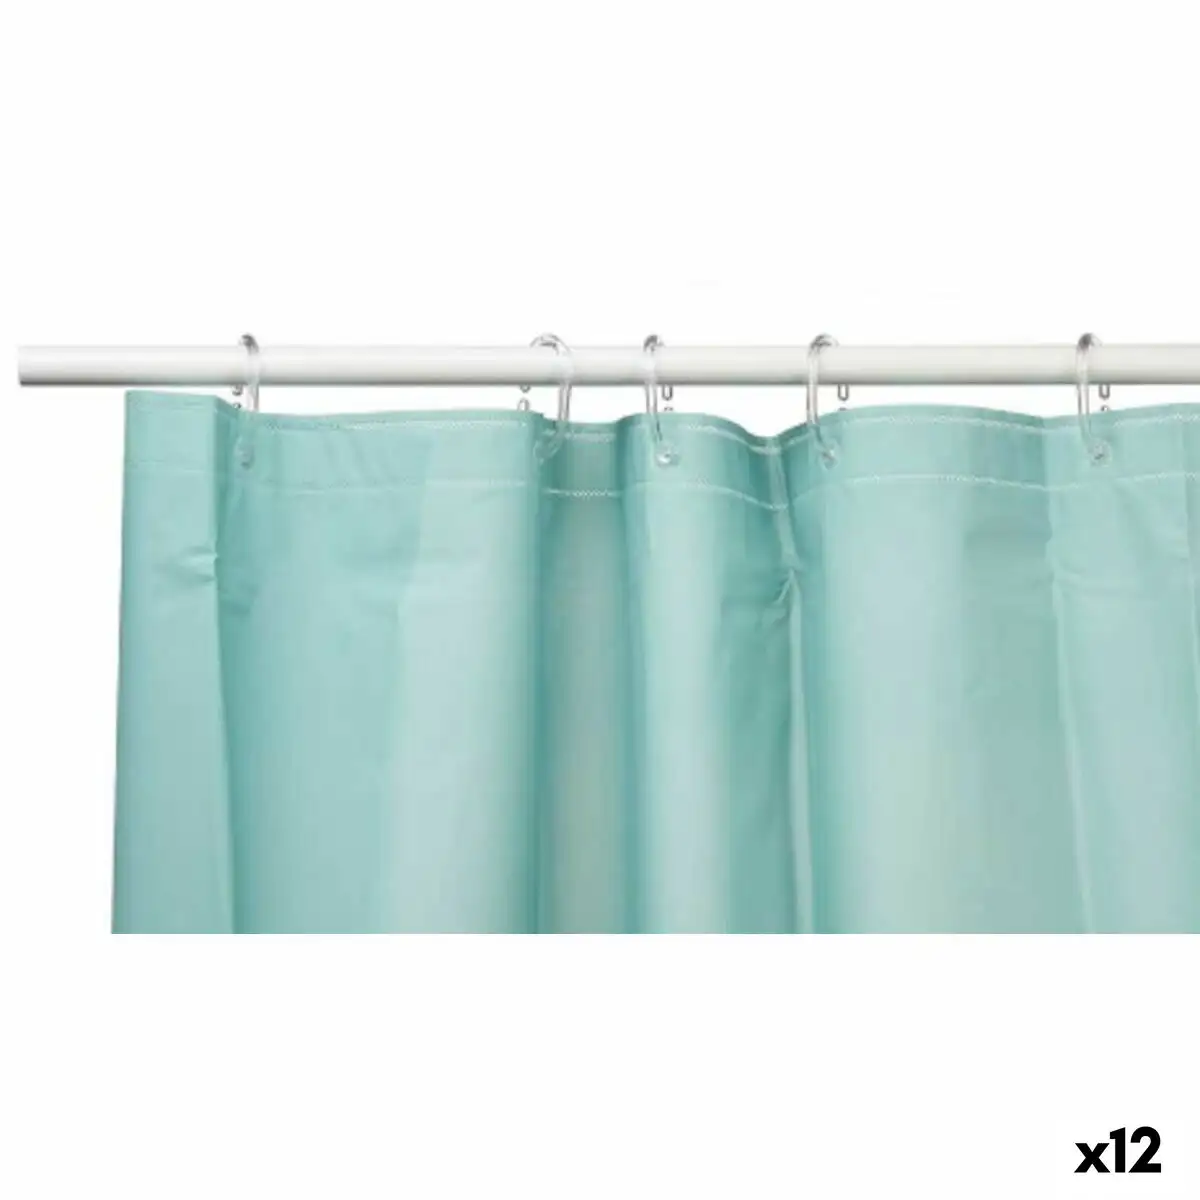 Rideau de douche vert polyethylene eva 180 x 180 cm 12 unites _2224. Bienvenue chez DIAYTAR SENEGAL - Où Choisir est un Voyage. Plongez dans notre plateforme en ligne pour trouver des produits qui ajoutent de la couleur et de la texture à votre quotidien.